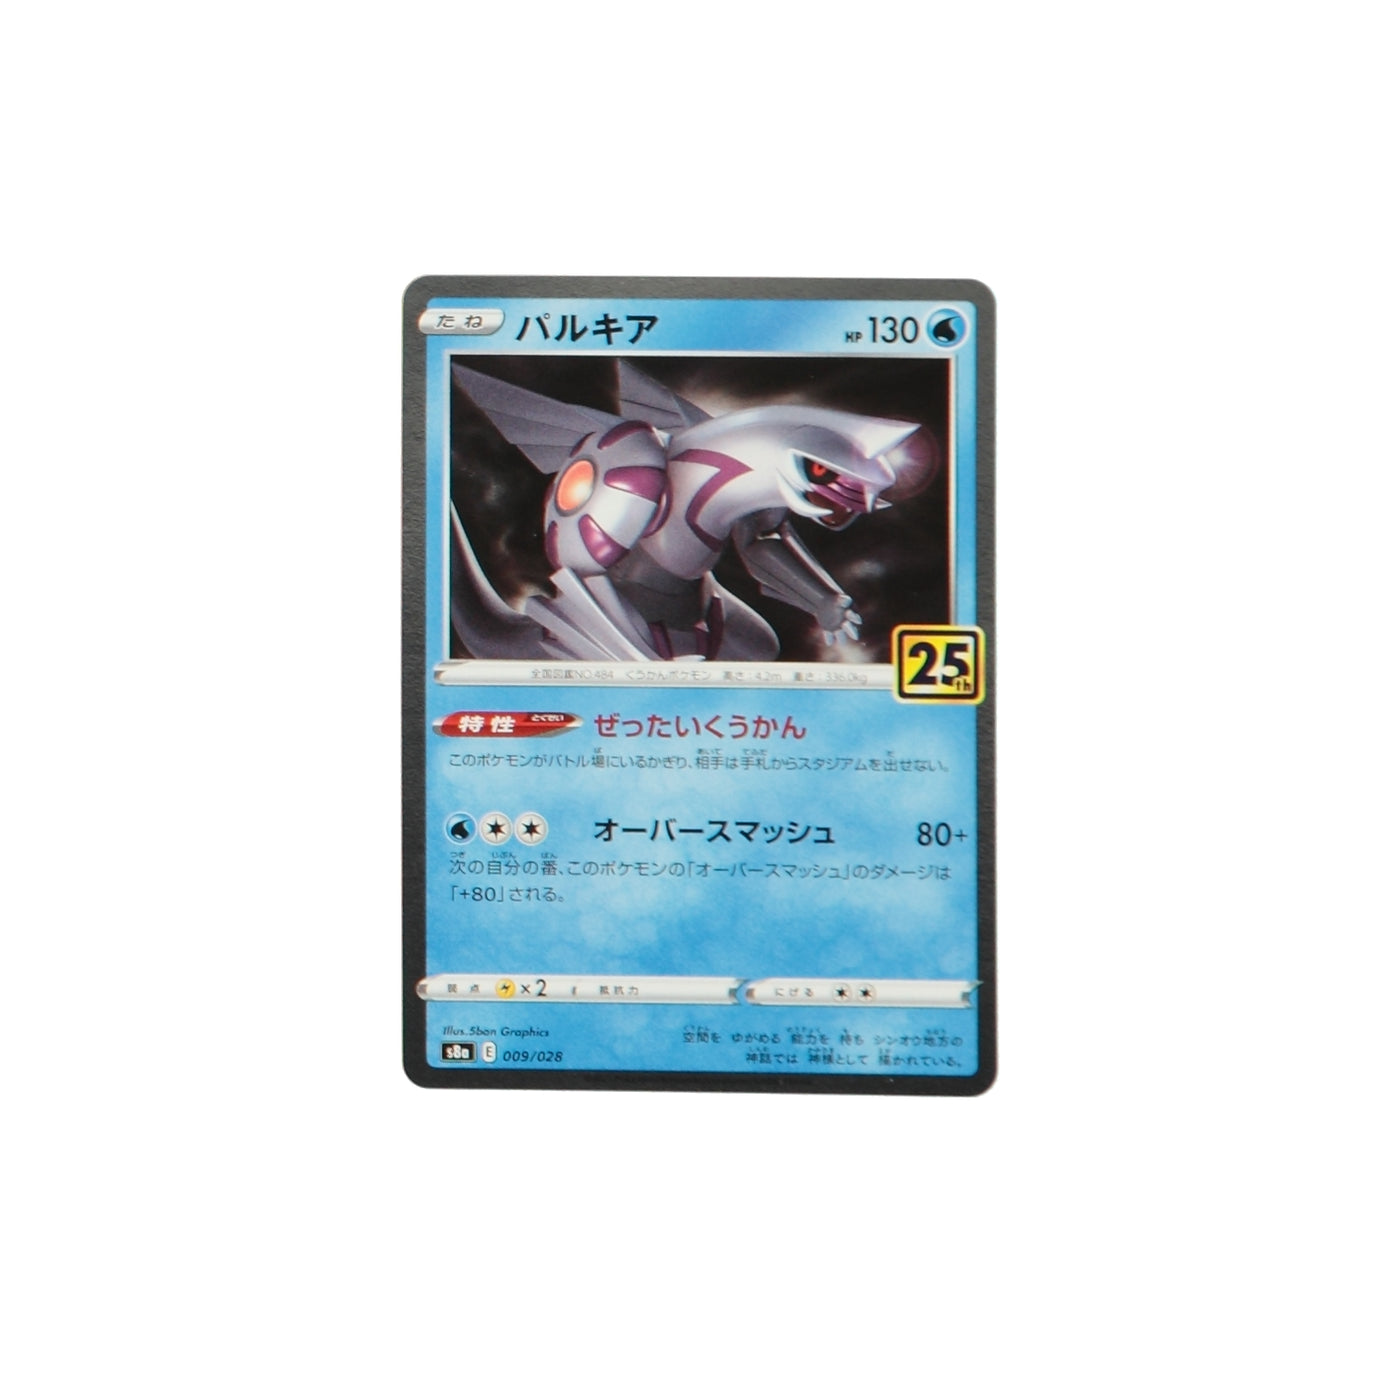 Pokemon TCG Japan S8A 009/028 Palkia Holo Card